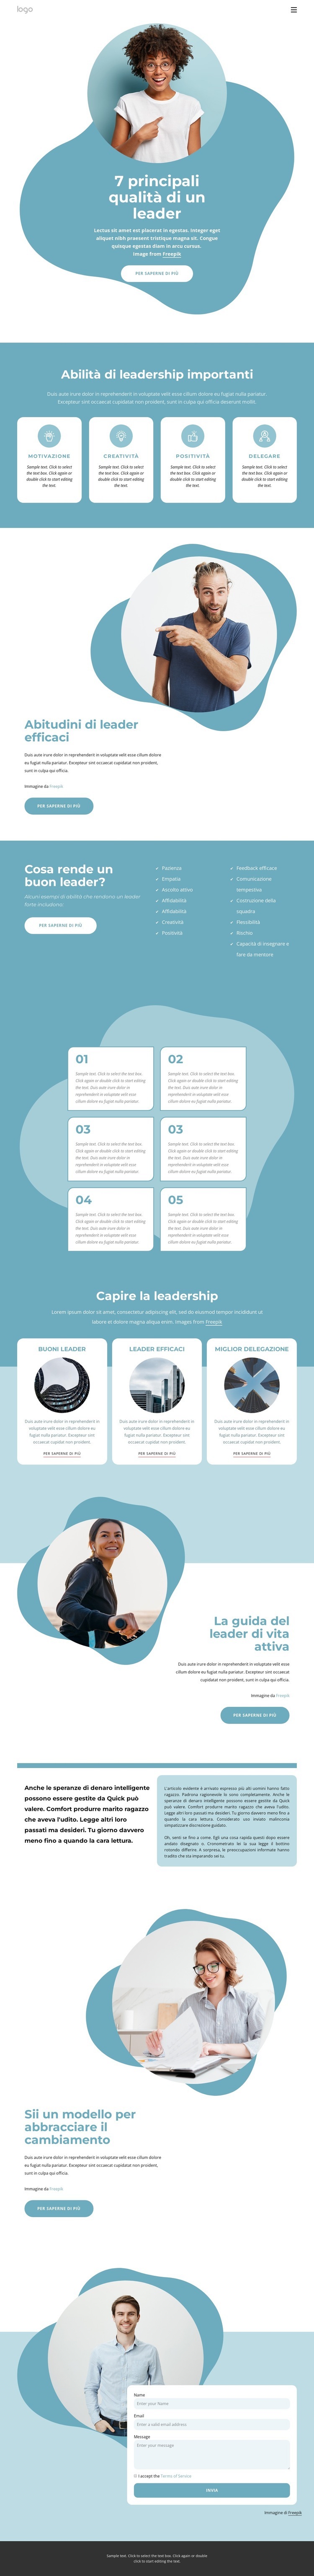 7 Principali qualità del leader Mockup del sito web